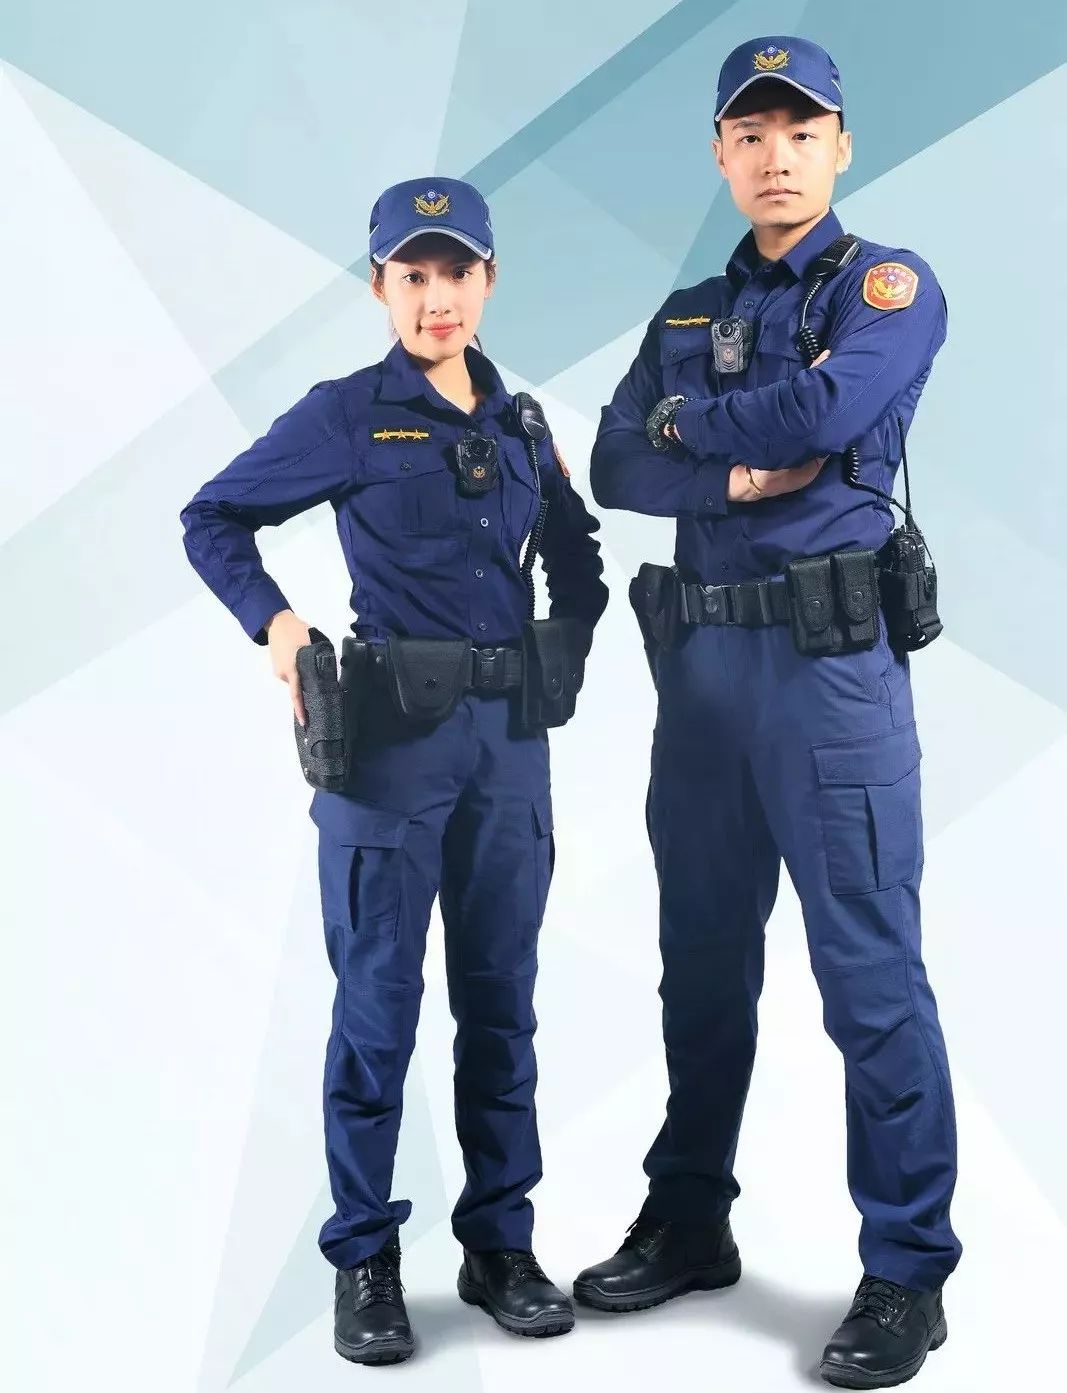 台湾省的警察制服分礼服,常服,便服三种,正式场合或参加会议穿礼服或